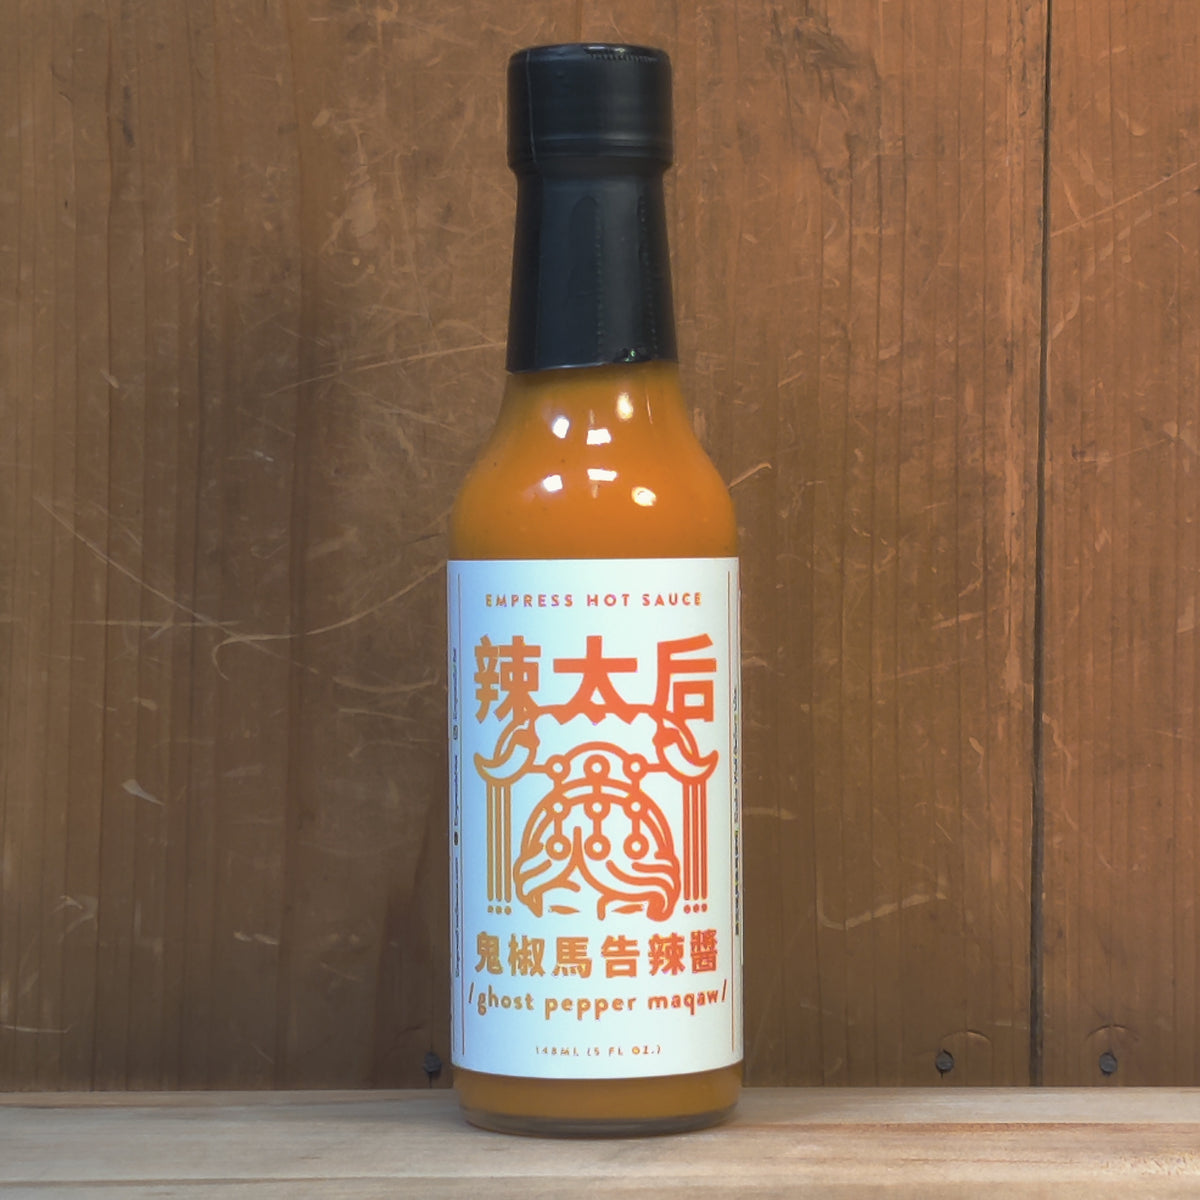 Empress Hot Sauce Ghost Pepper Maqaw - 148ml